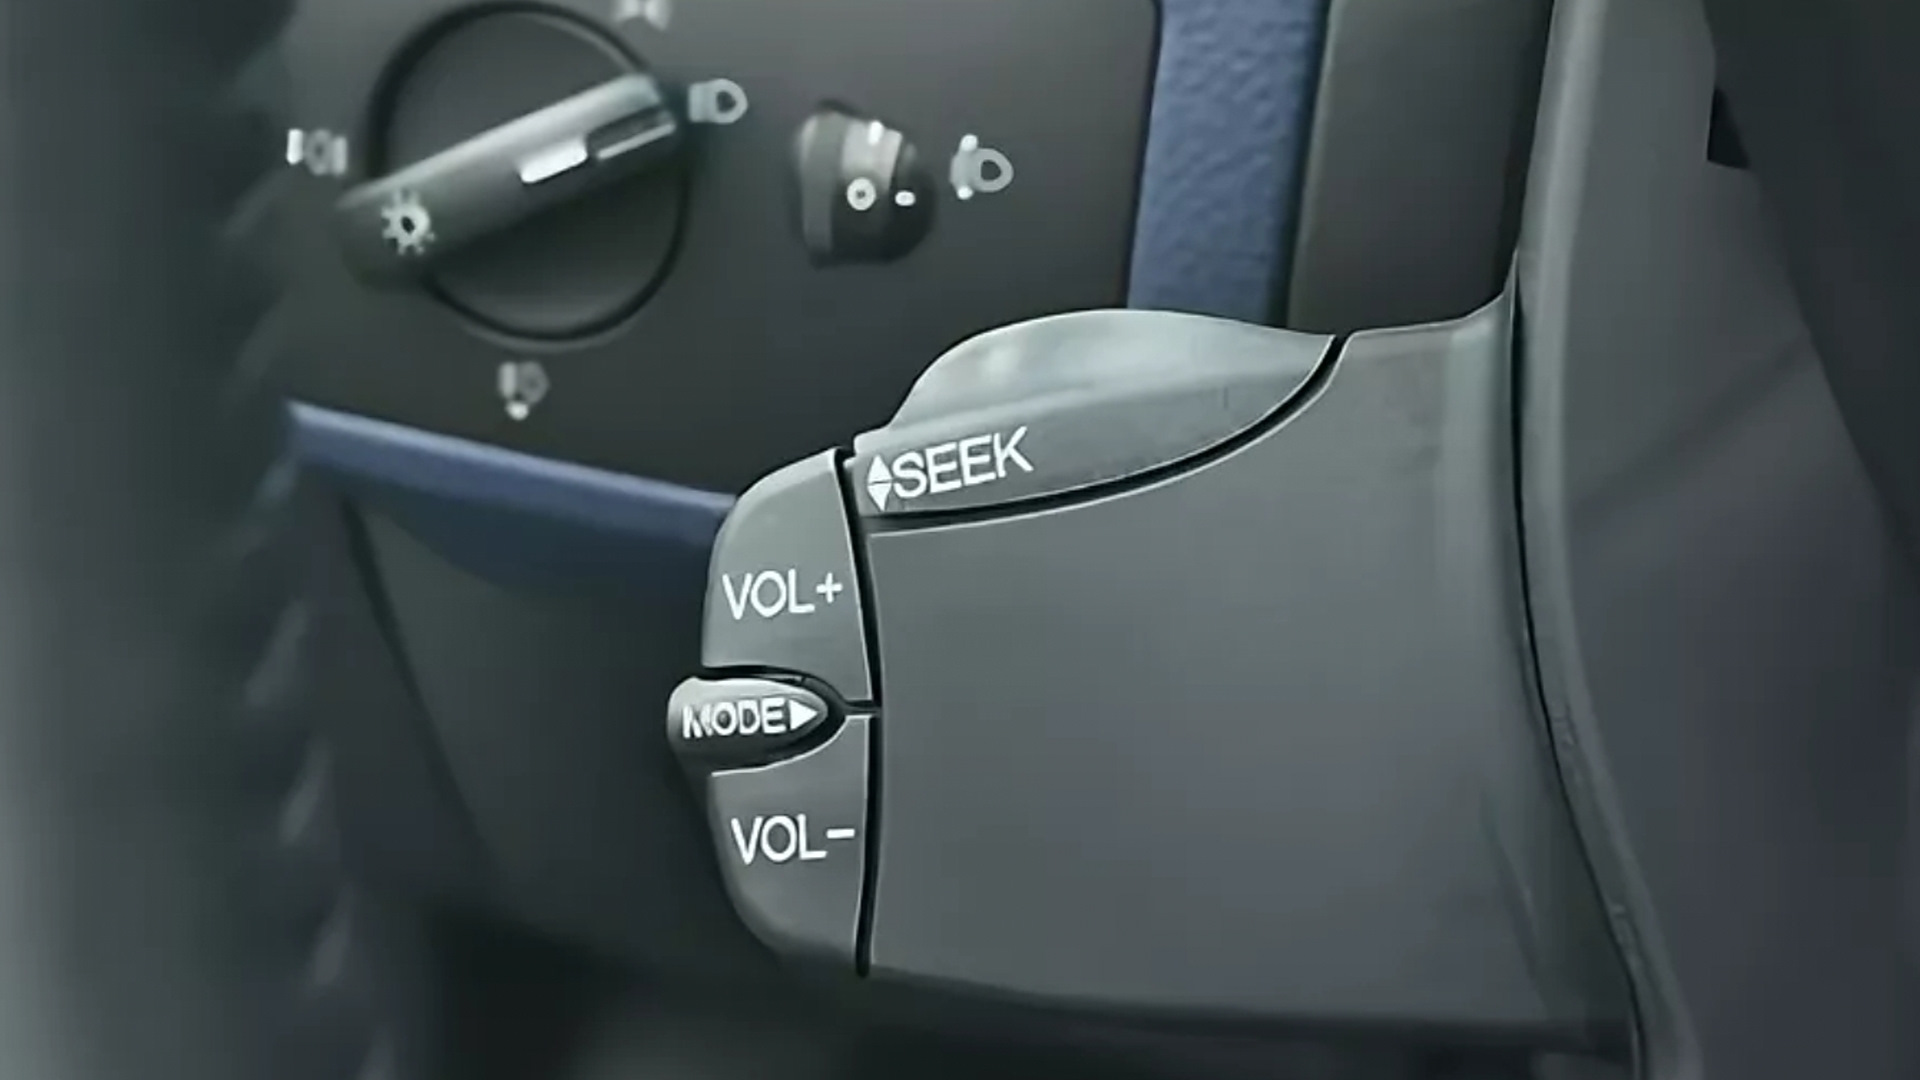 Фокус 2 джойстик. Ford Fusion подрулевой джойстик. Джойстик управления магнитолой Форд фокус 2. Джойстик рулевого управления на Форд фокус 2. Подрулевой пульт управления медиасистемой Ford Fusion.